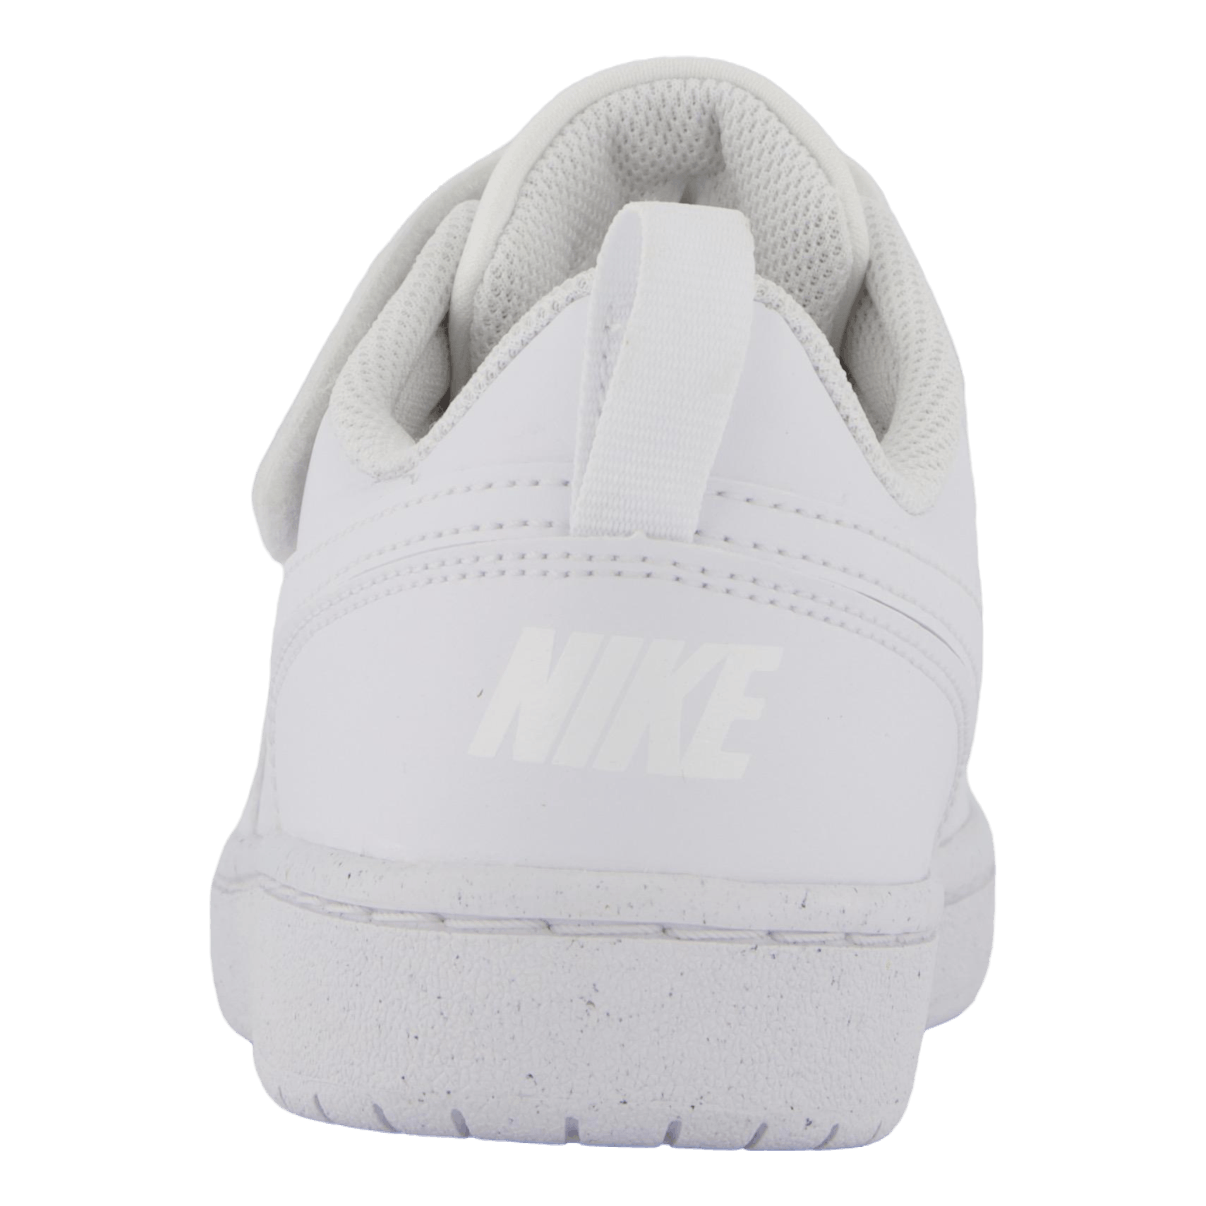 Nike Court Borough Low Recraft White/white-white